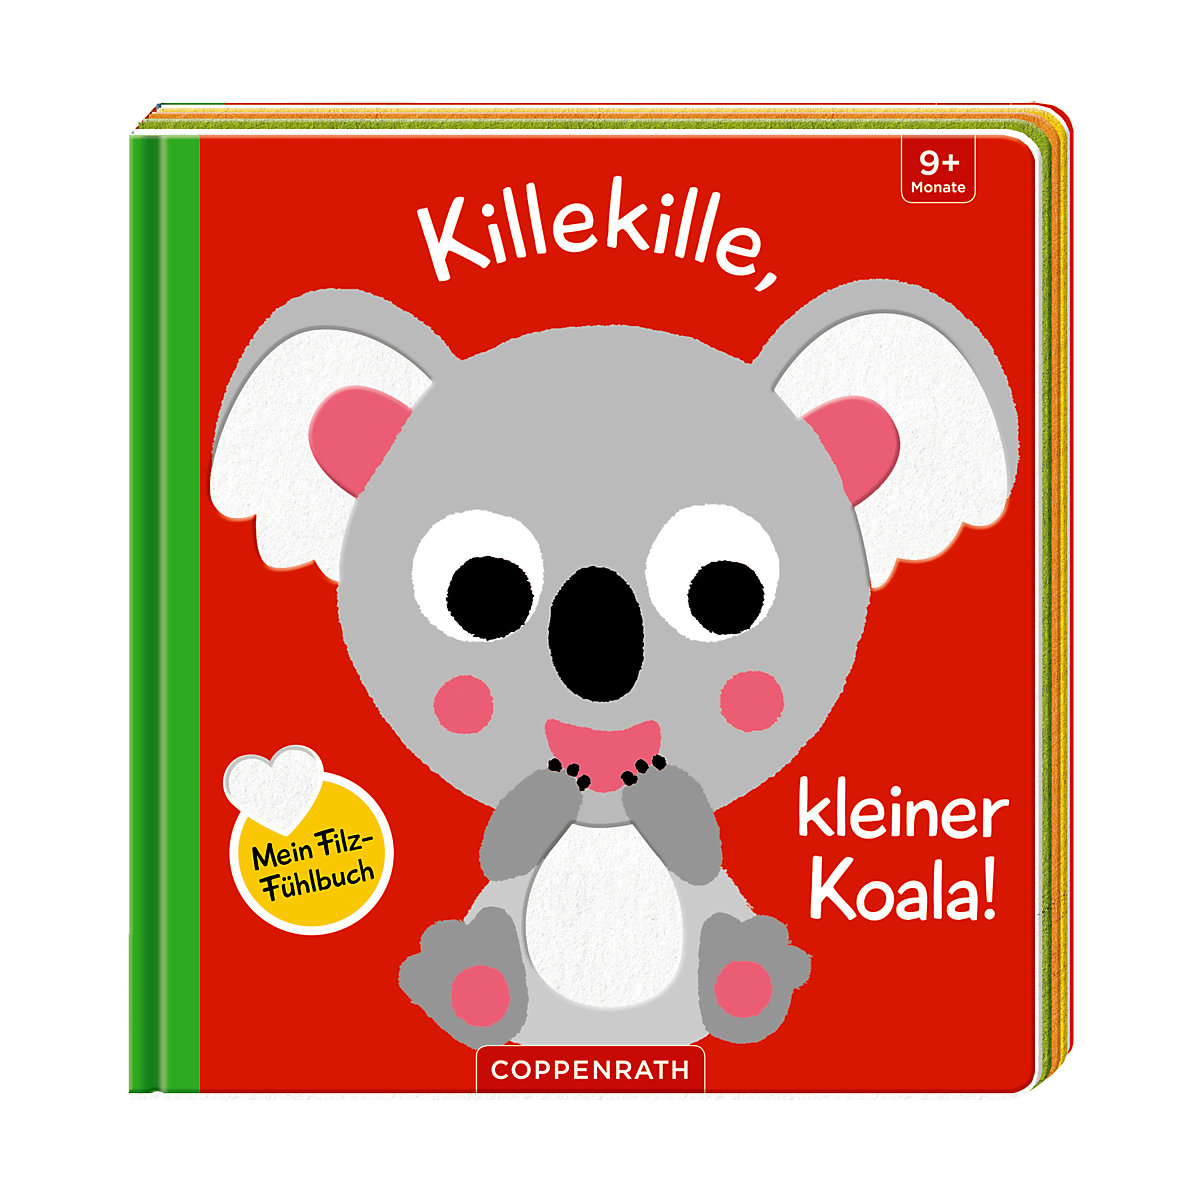 Coppenrath Verlag Mein Filz-Fühlbuch: Killekille kleiner Koala